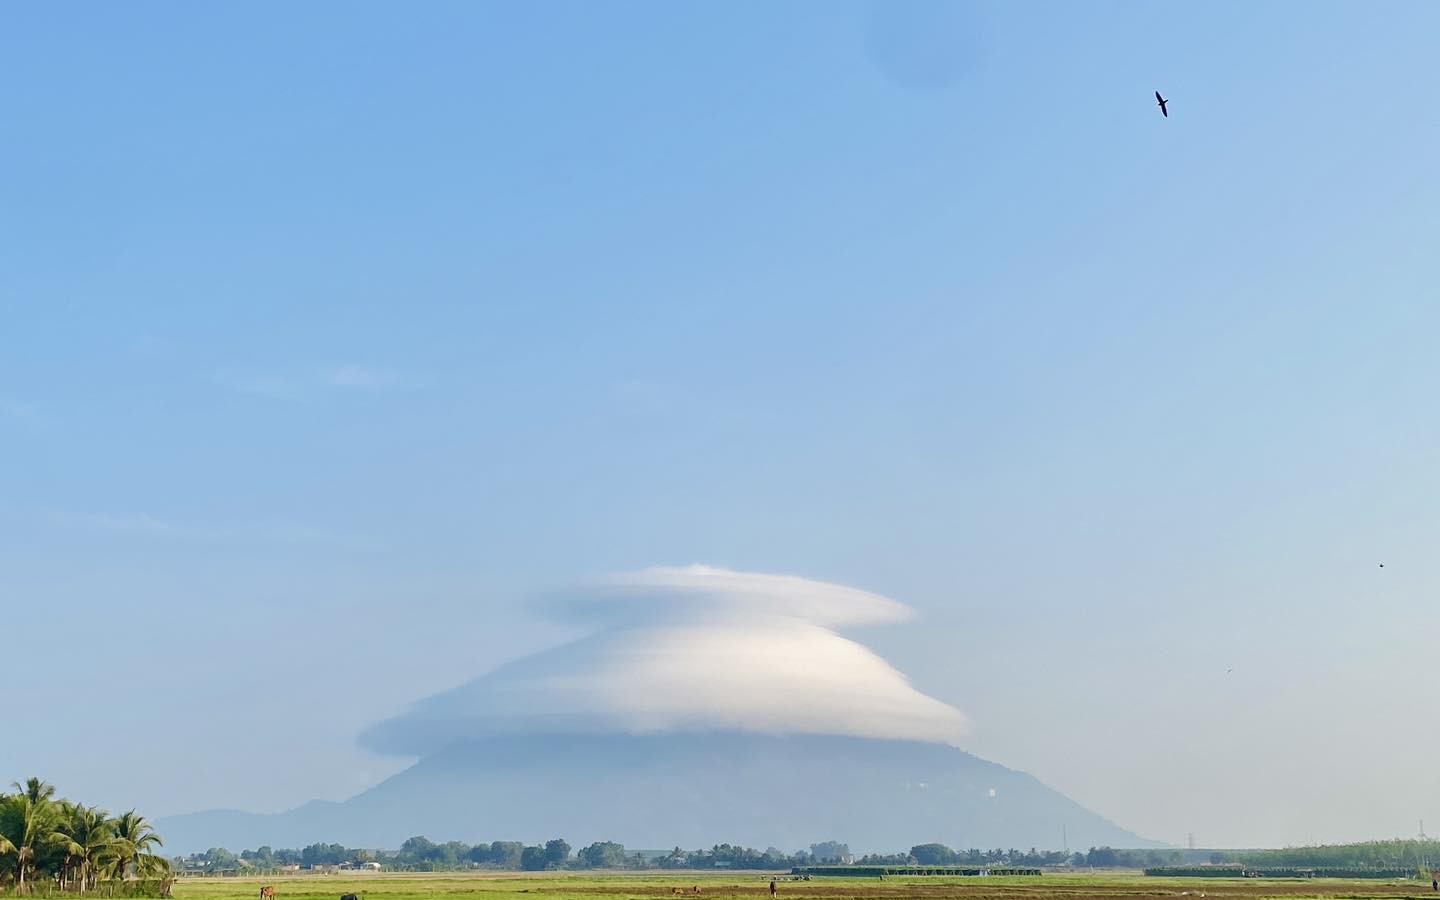 Xuất hiện mũ mây tại núi Bà Đen, người dân Nam bộ về Tây Ninh săn mây và trốn nóng